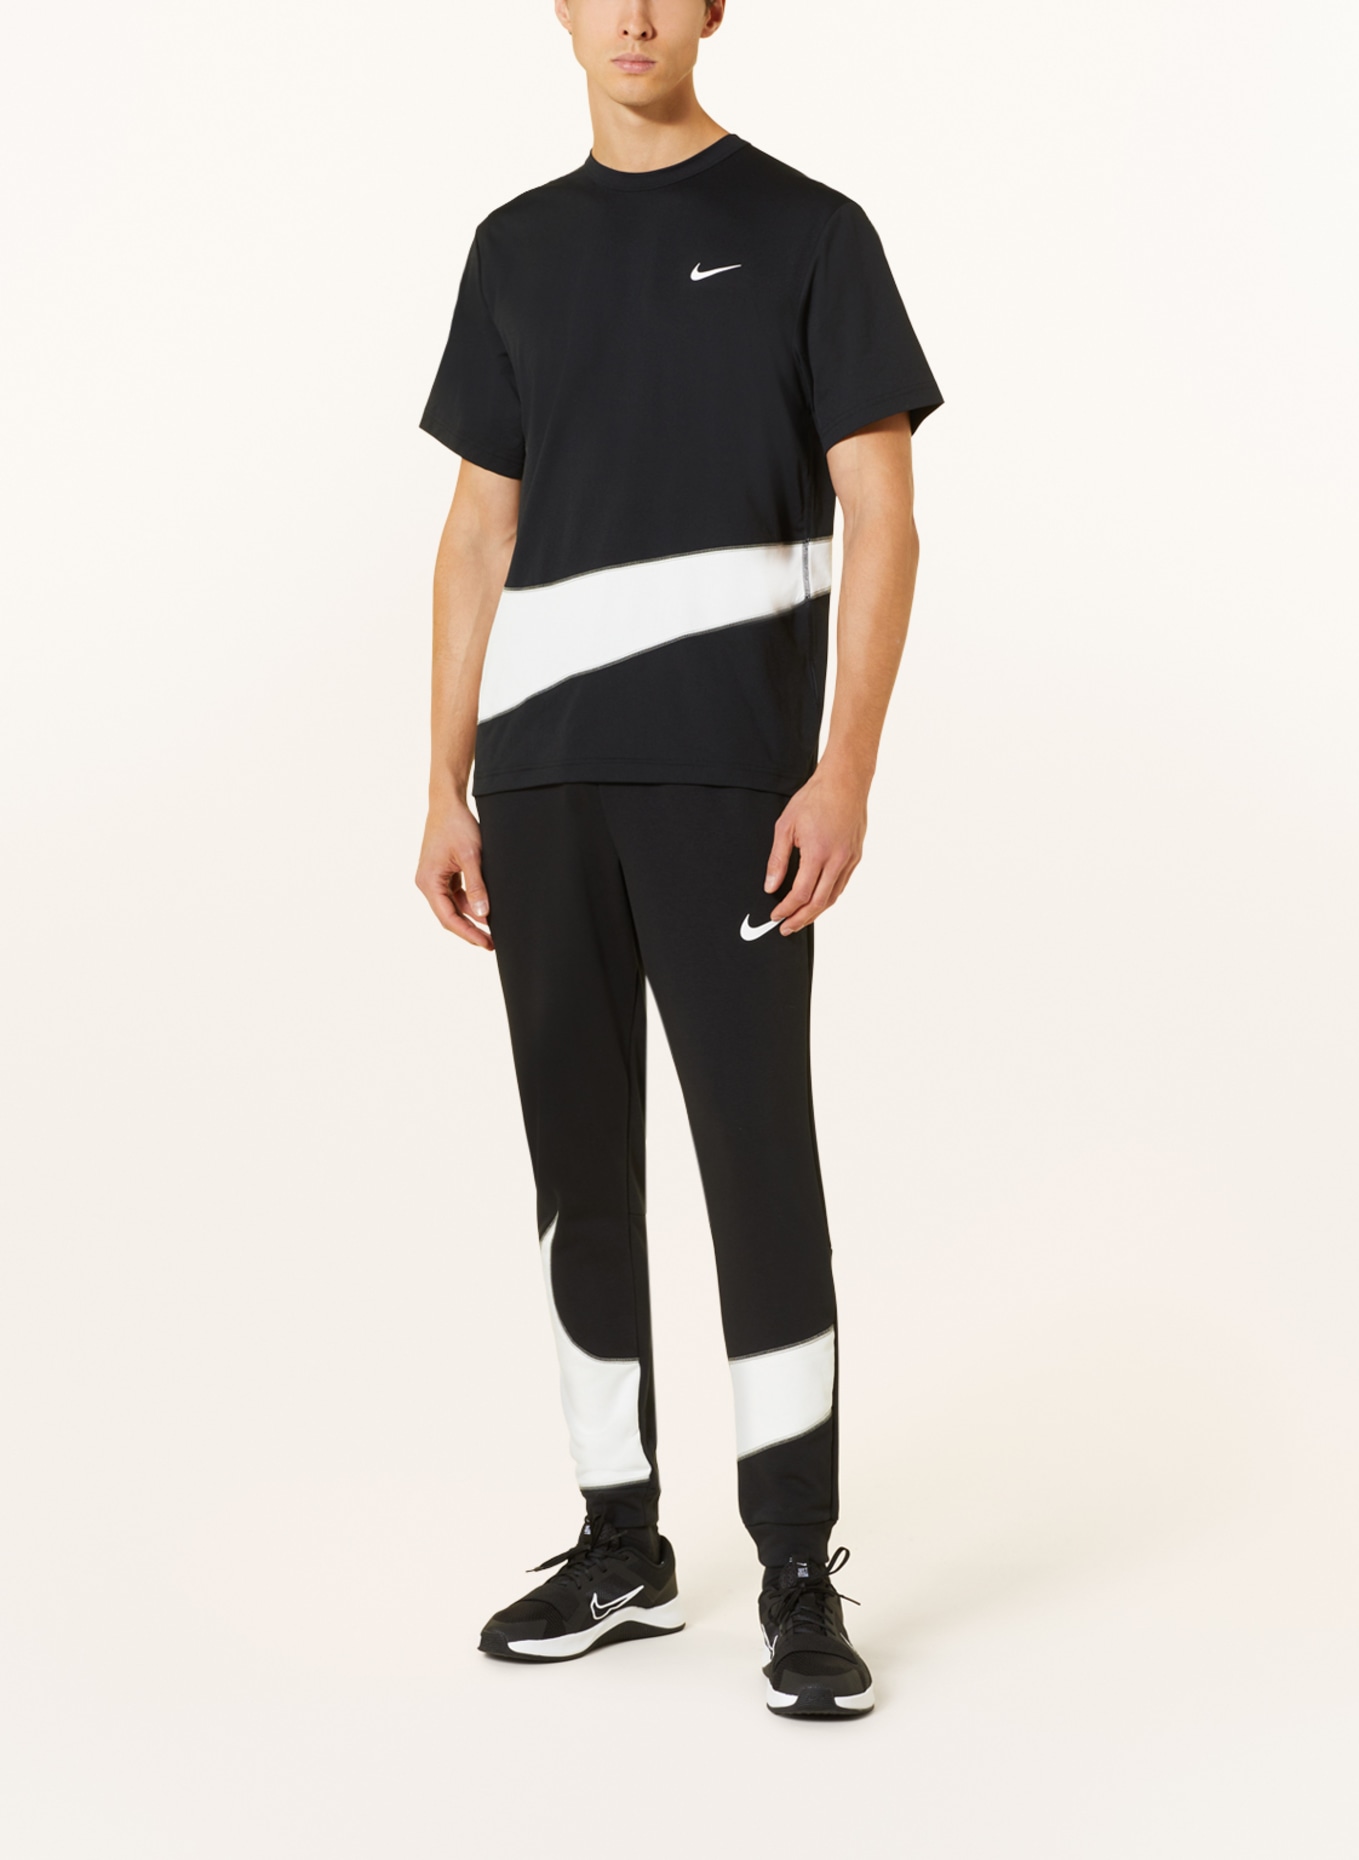 Nike T-shirt DRI-FIT UV HYVERSE, Color: BLACK/ WHITE (Image 2)